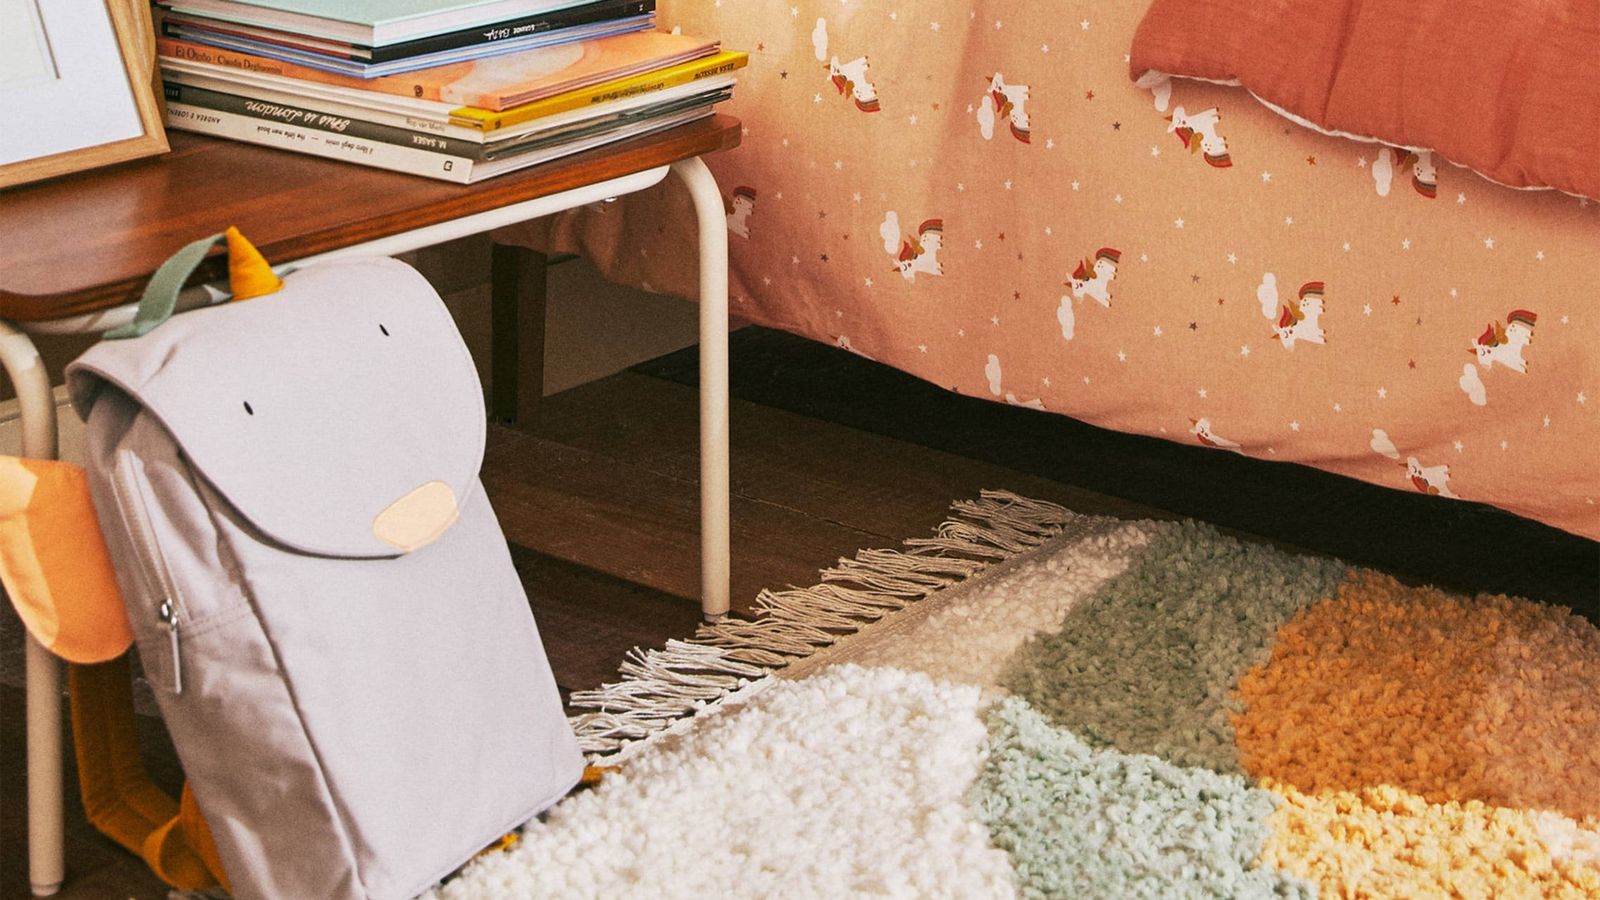 Tu cuarto de estar necesita estas alfombras de Zara Home y ahora que las  has visto, tú también